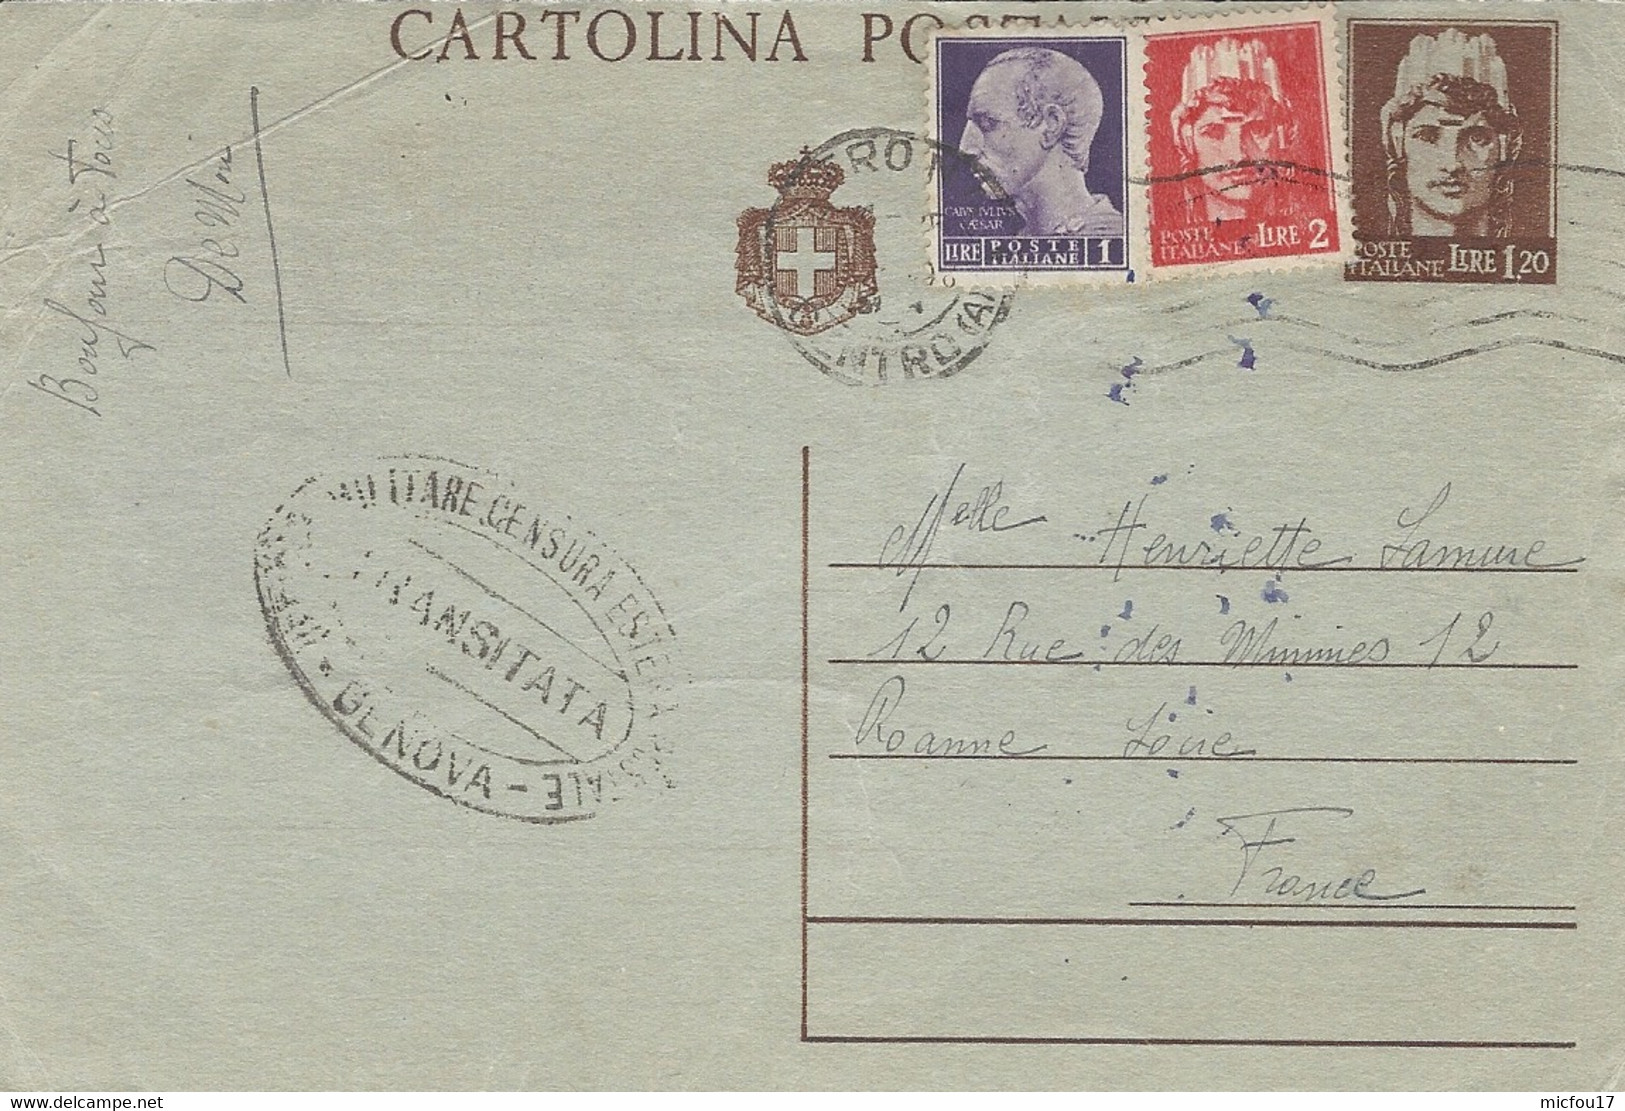 NOV. 1945- C P E P Lire 1,20 + Compl. 3 Lit Da Verona  Per Francia  - Censura Di Genova - TRANSITATA - Stamped Stationery